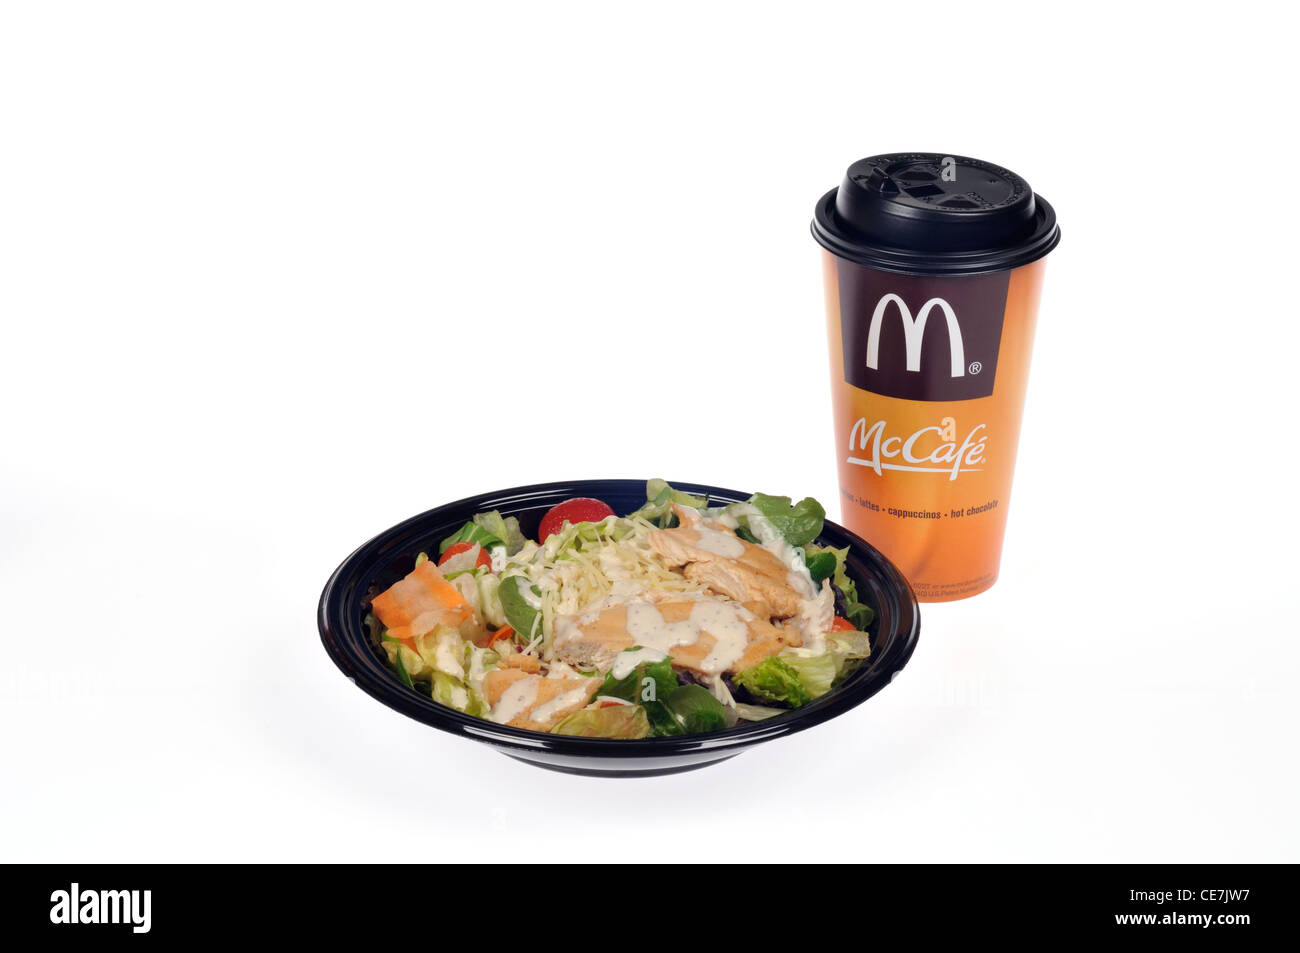 McDonalds salade césar au poulet grillé avec une tasse de café chaud McCafe sur fond blanc. Banque D'Images